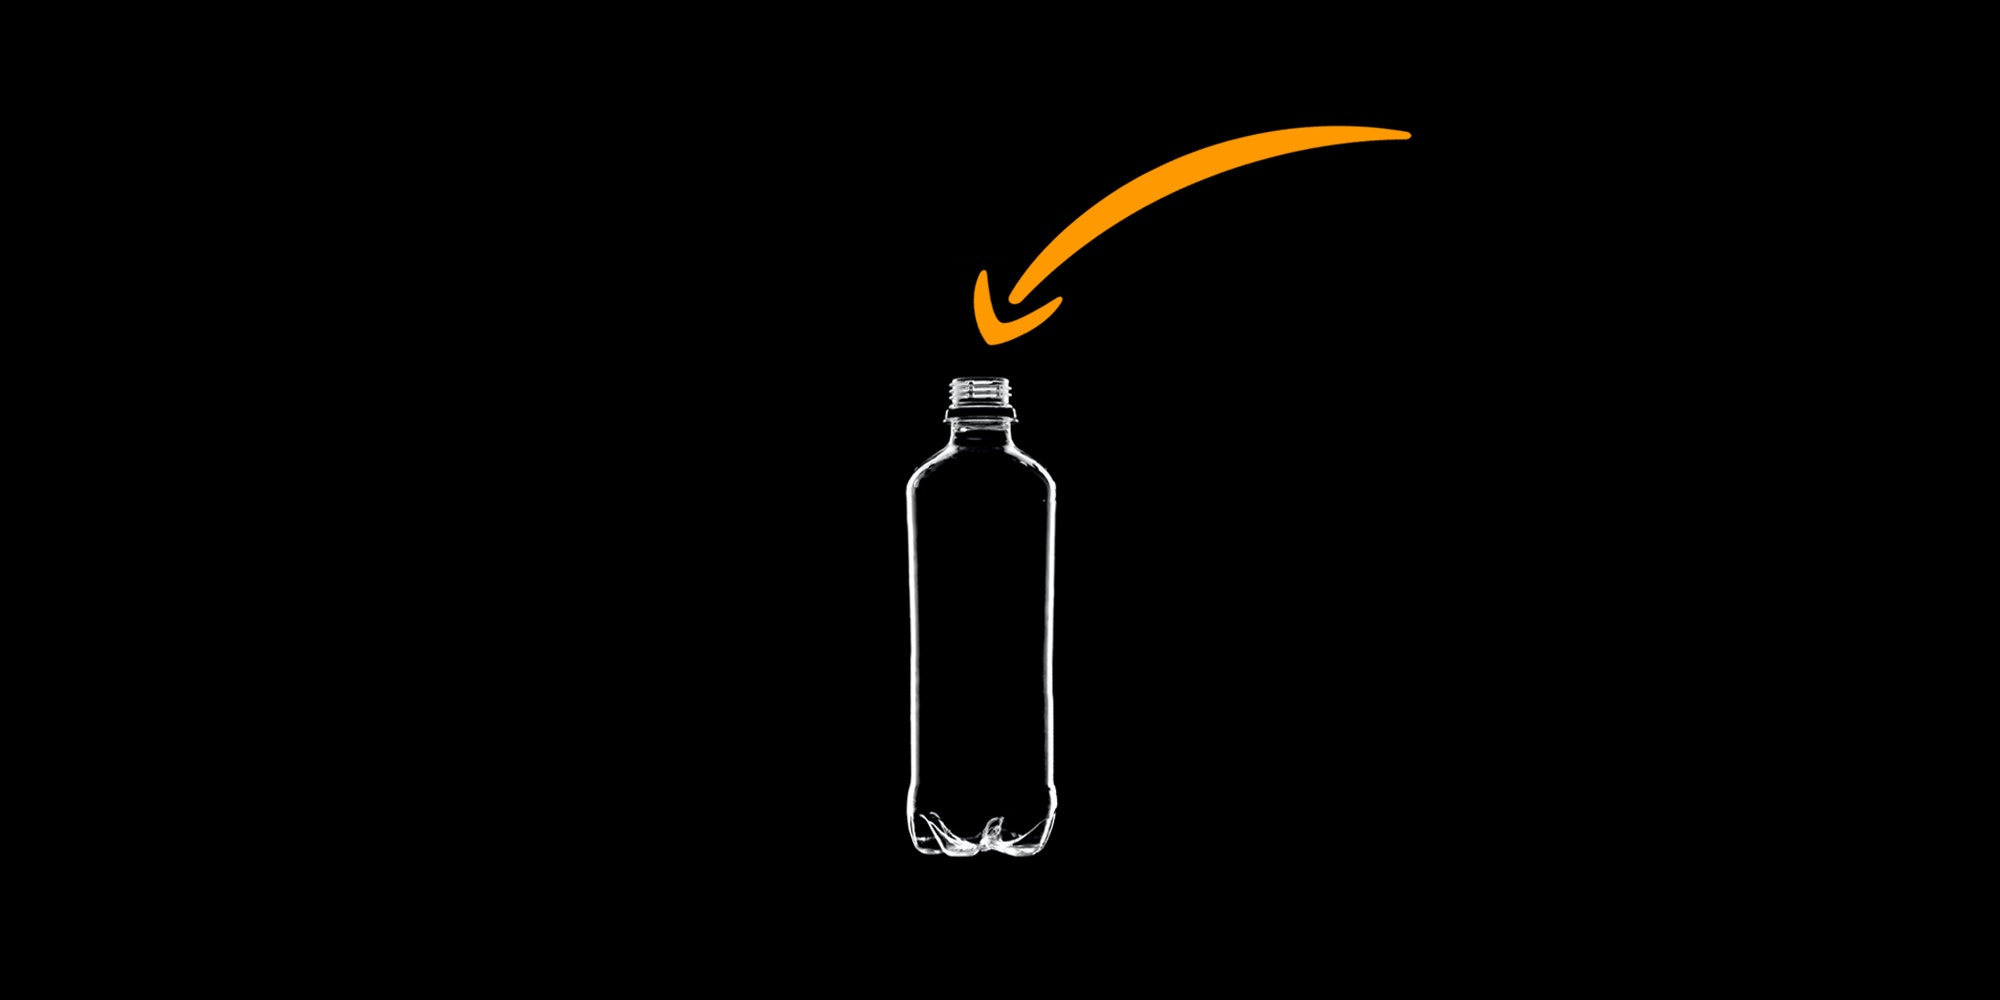 El caso de Amazon y orinar en botellas